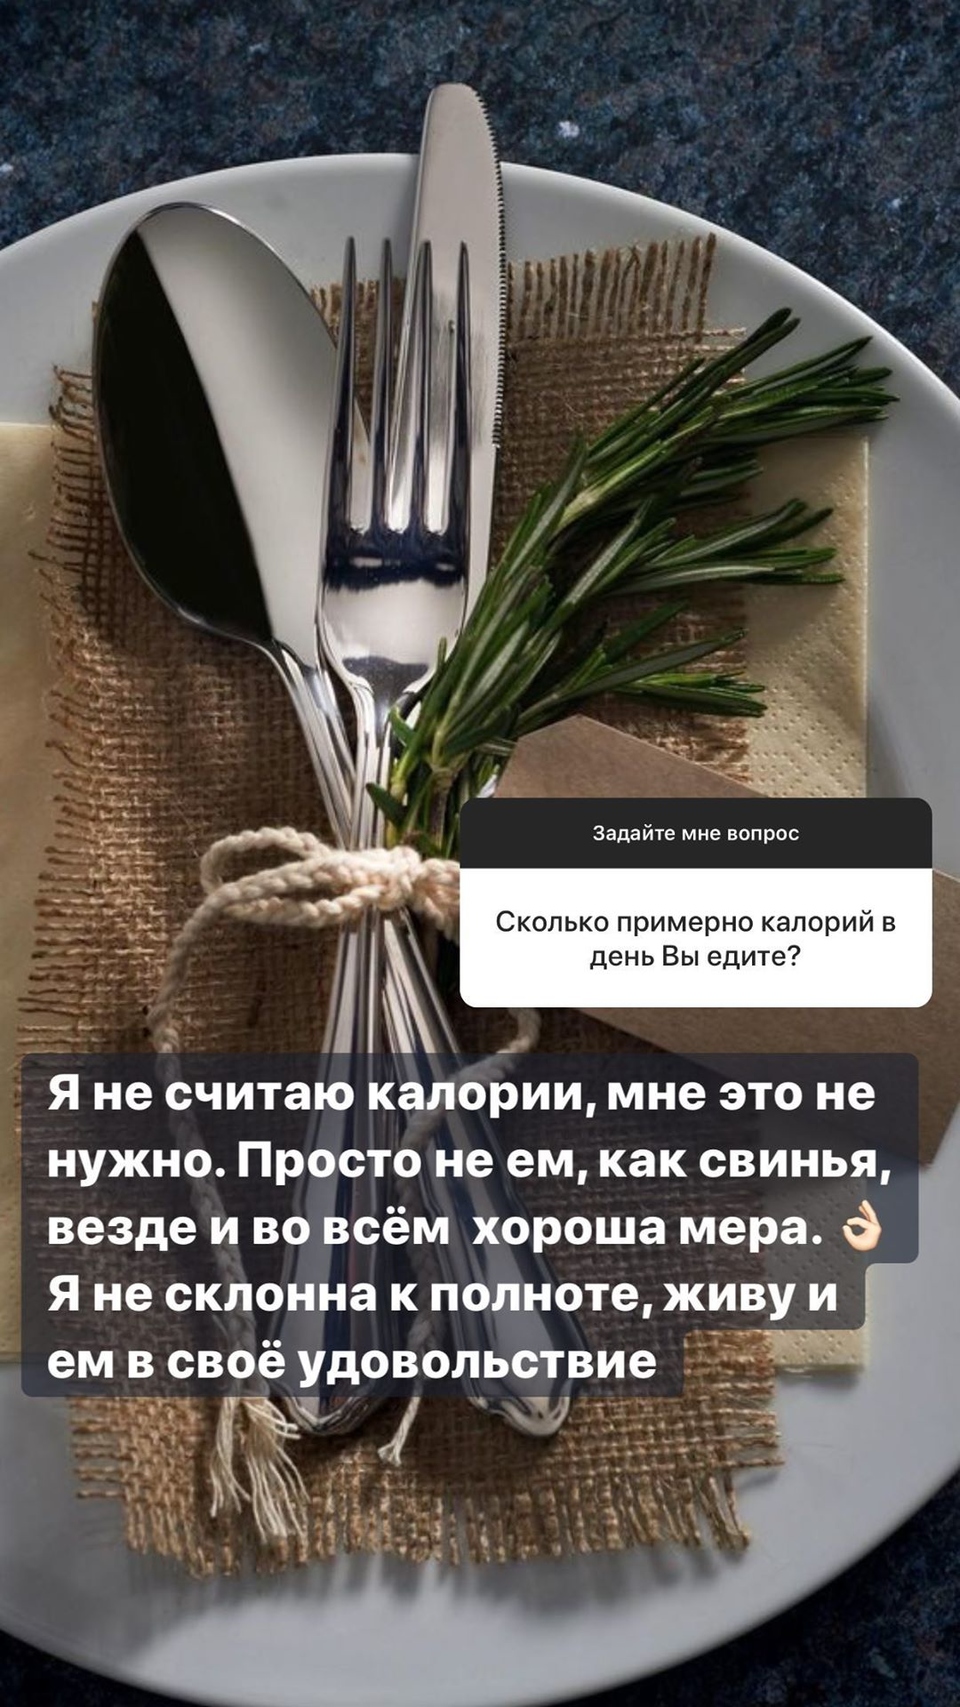 Евгения уверяет, что не сидит на диетах фото: «Инстаграм» 